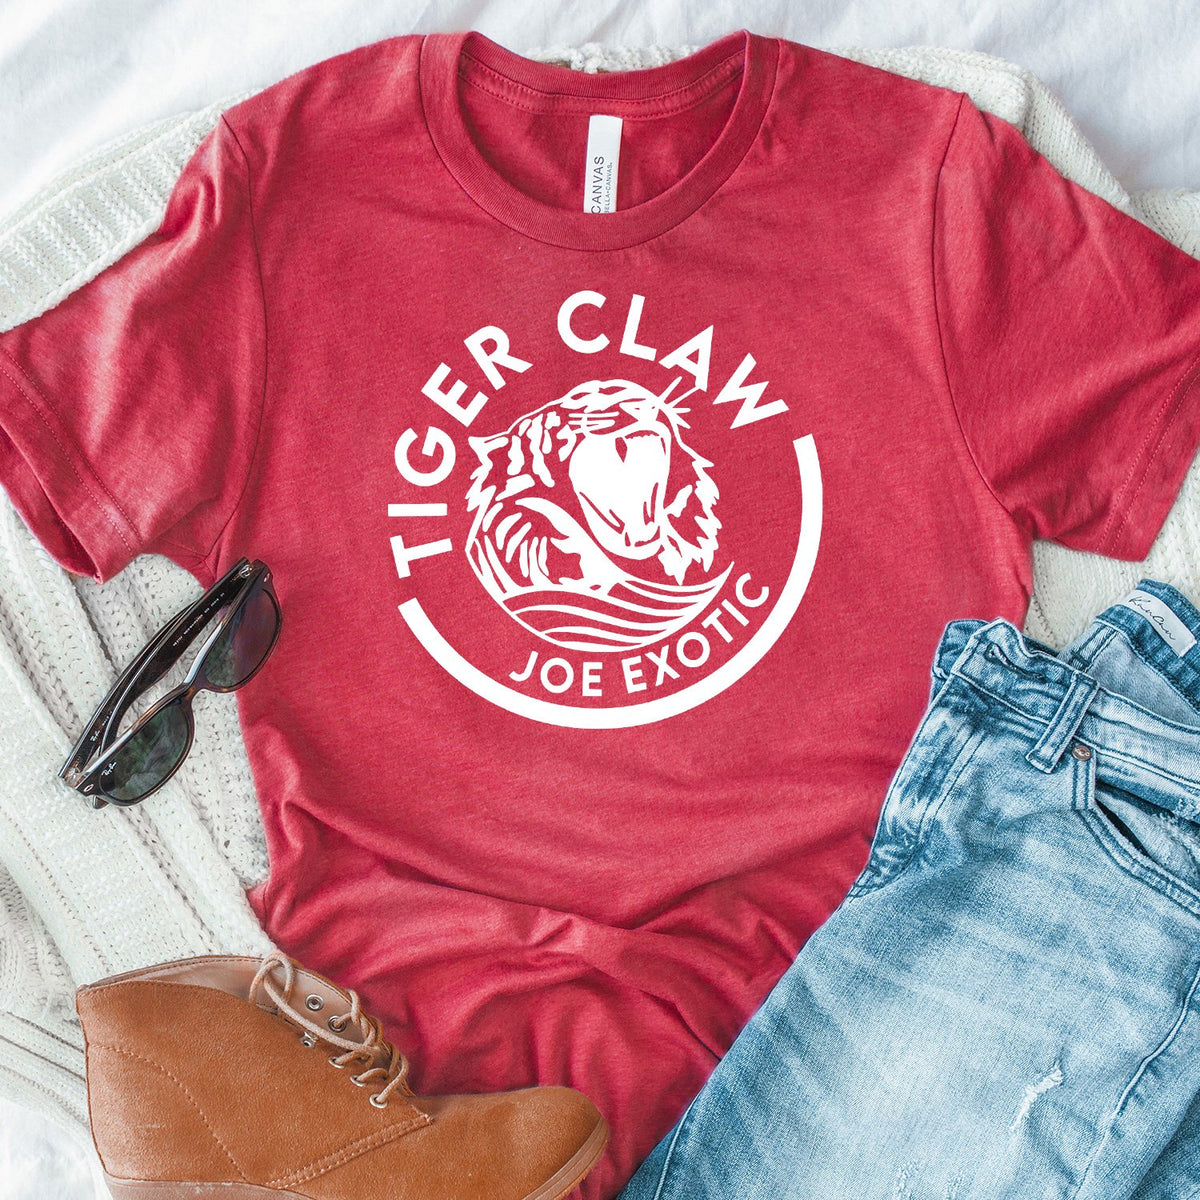 Tiger Claw Joe Exotic - Short Sleeve Tee Shirt